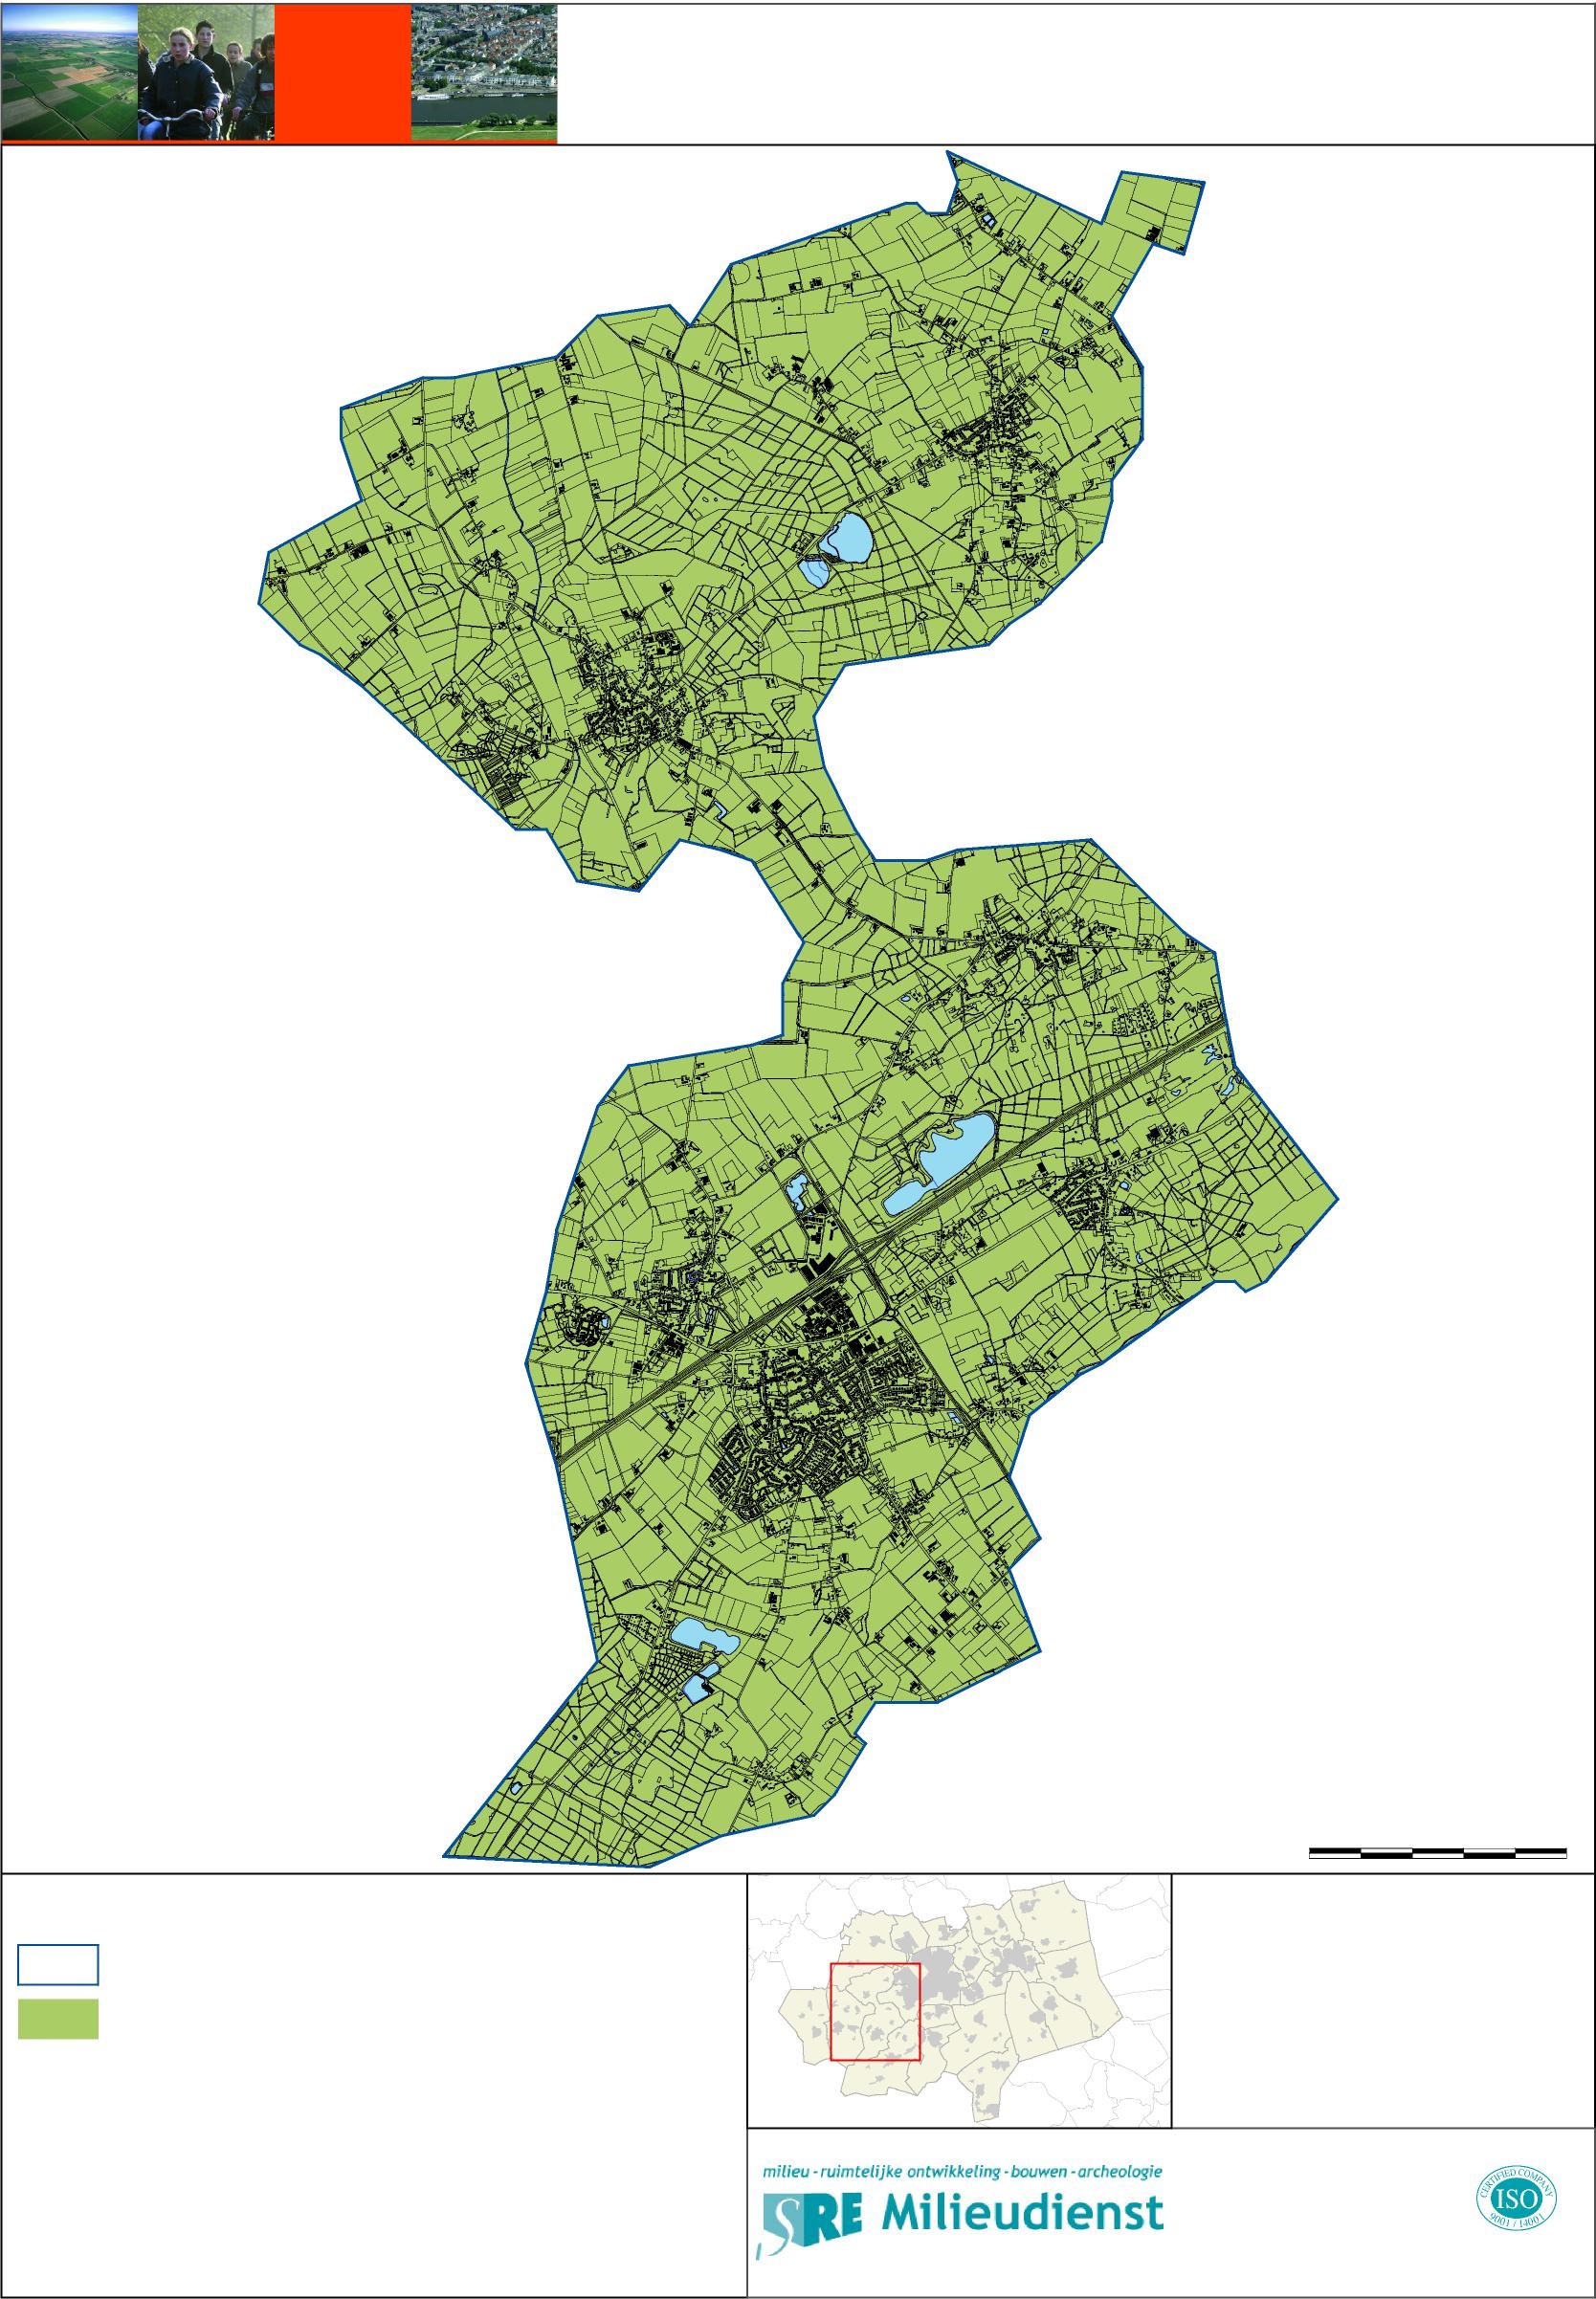 Bodemkwaliteitskaart gemeente Eersel ontgravingskaart 0 500 1.000 1.500 2.000 2.